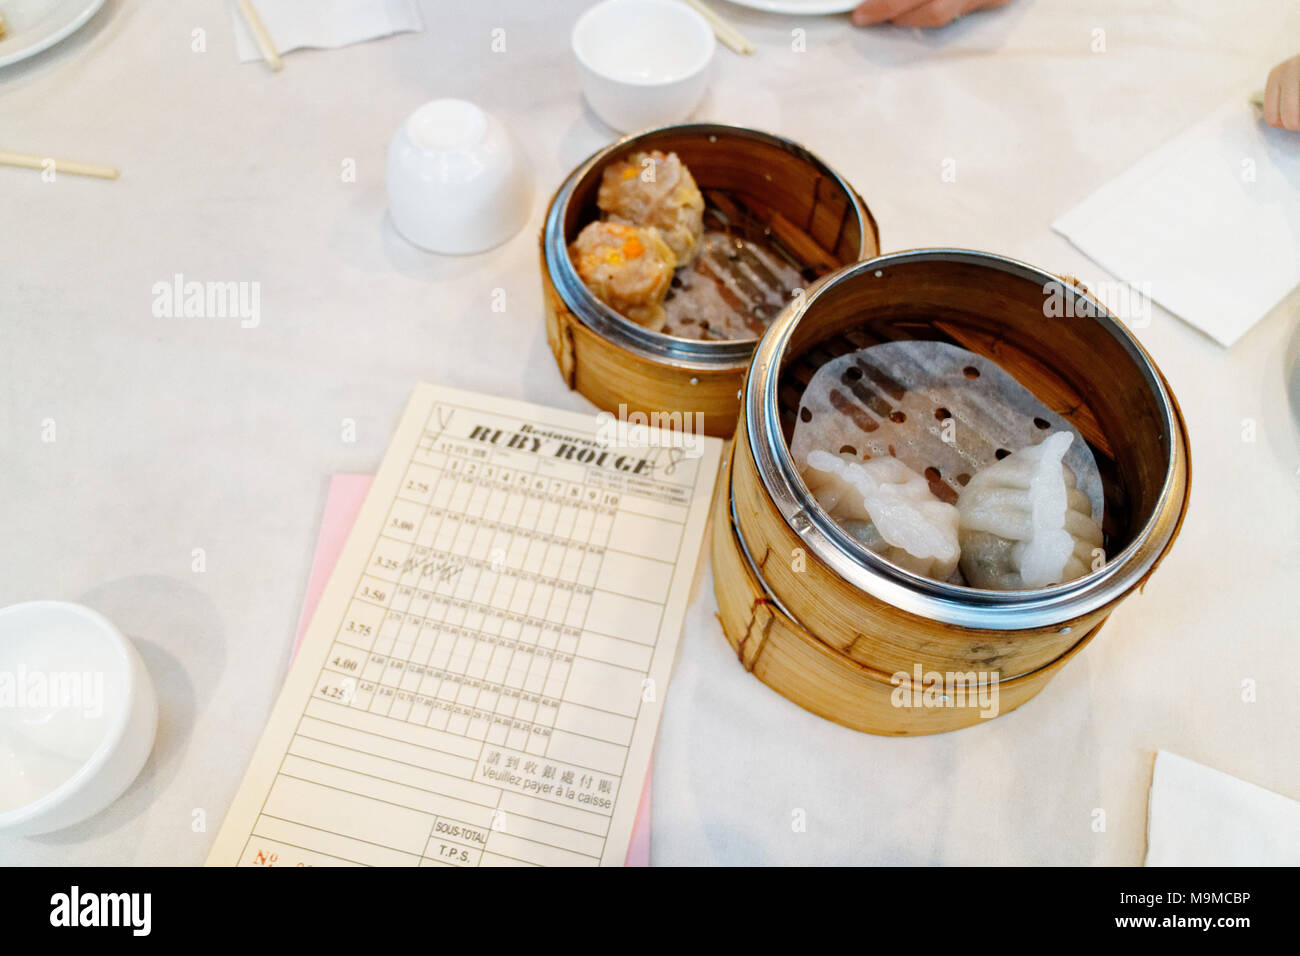 Un plat chinois dans son panier en osier dans le fameux dim sum restaurant Ruby Rouge dans le quartier chinois de Montréal Banque D'Images